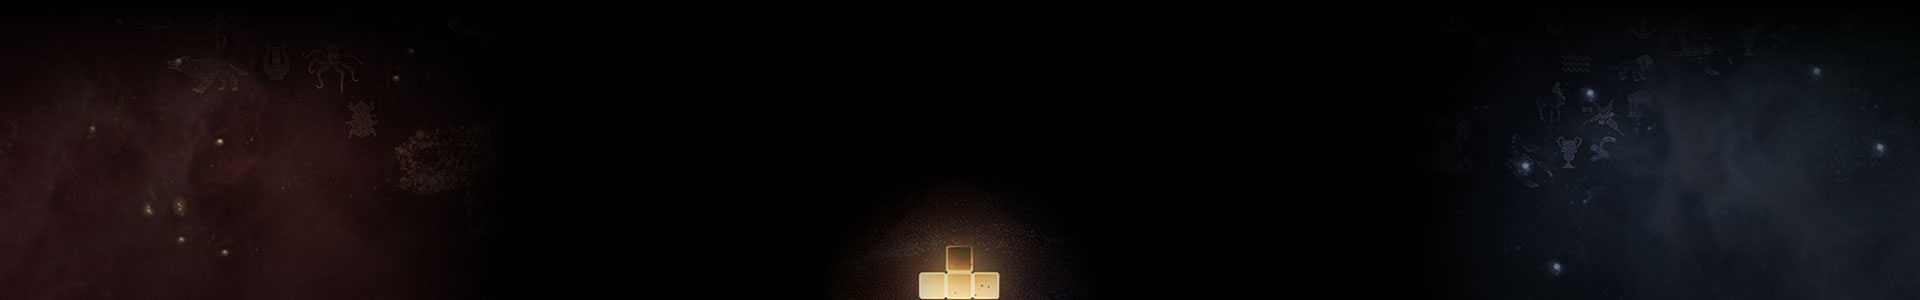 Светящийся элемент Tetris сидит среди звезд.